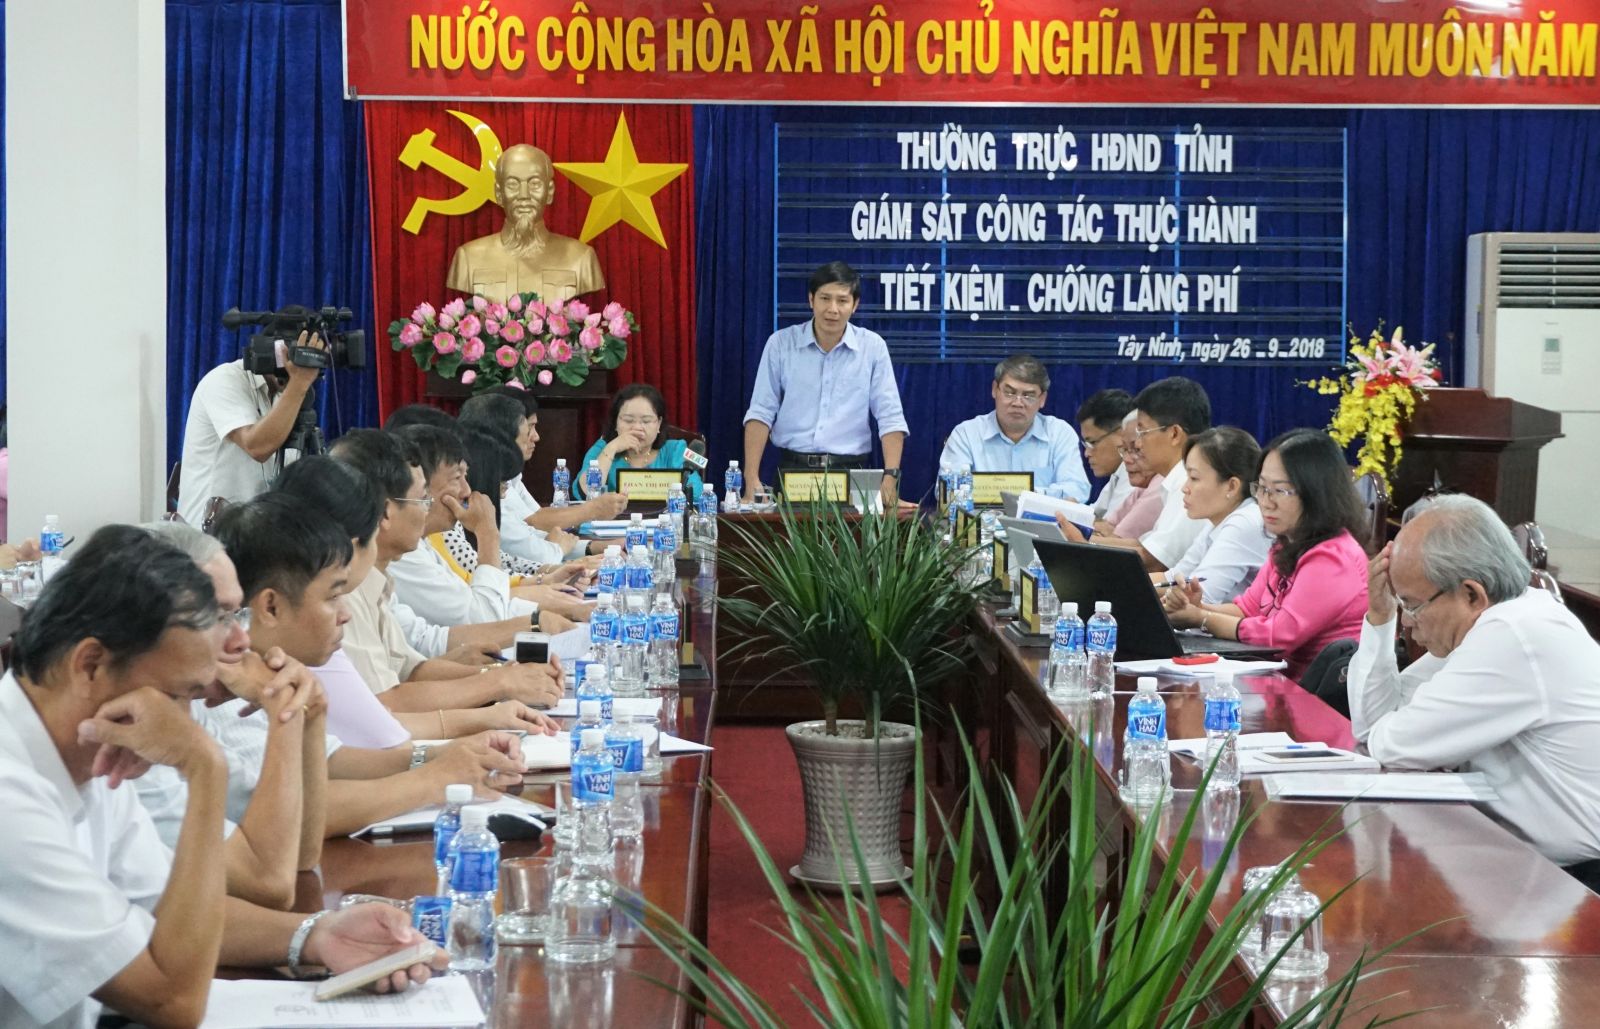 Điểm báo in Tây Ninh ngày 19.10.2018